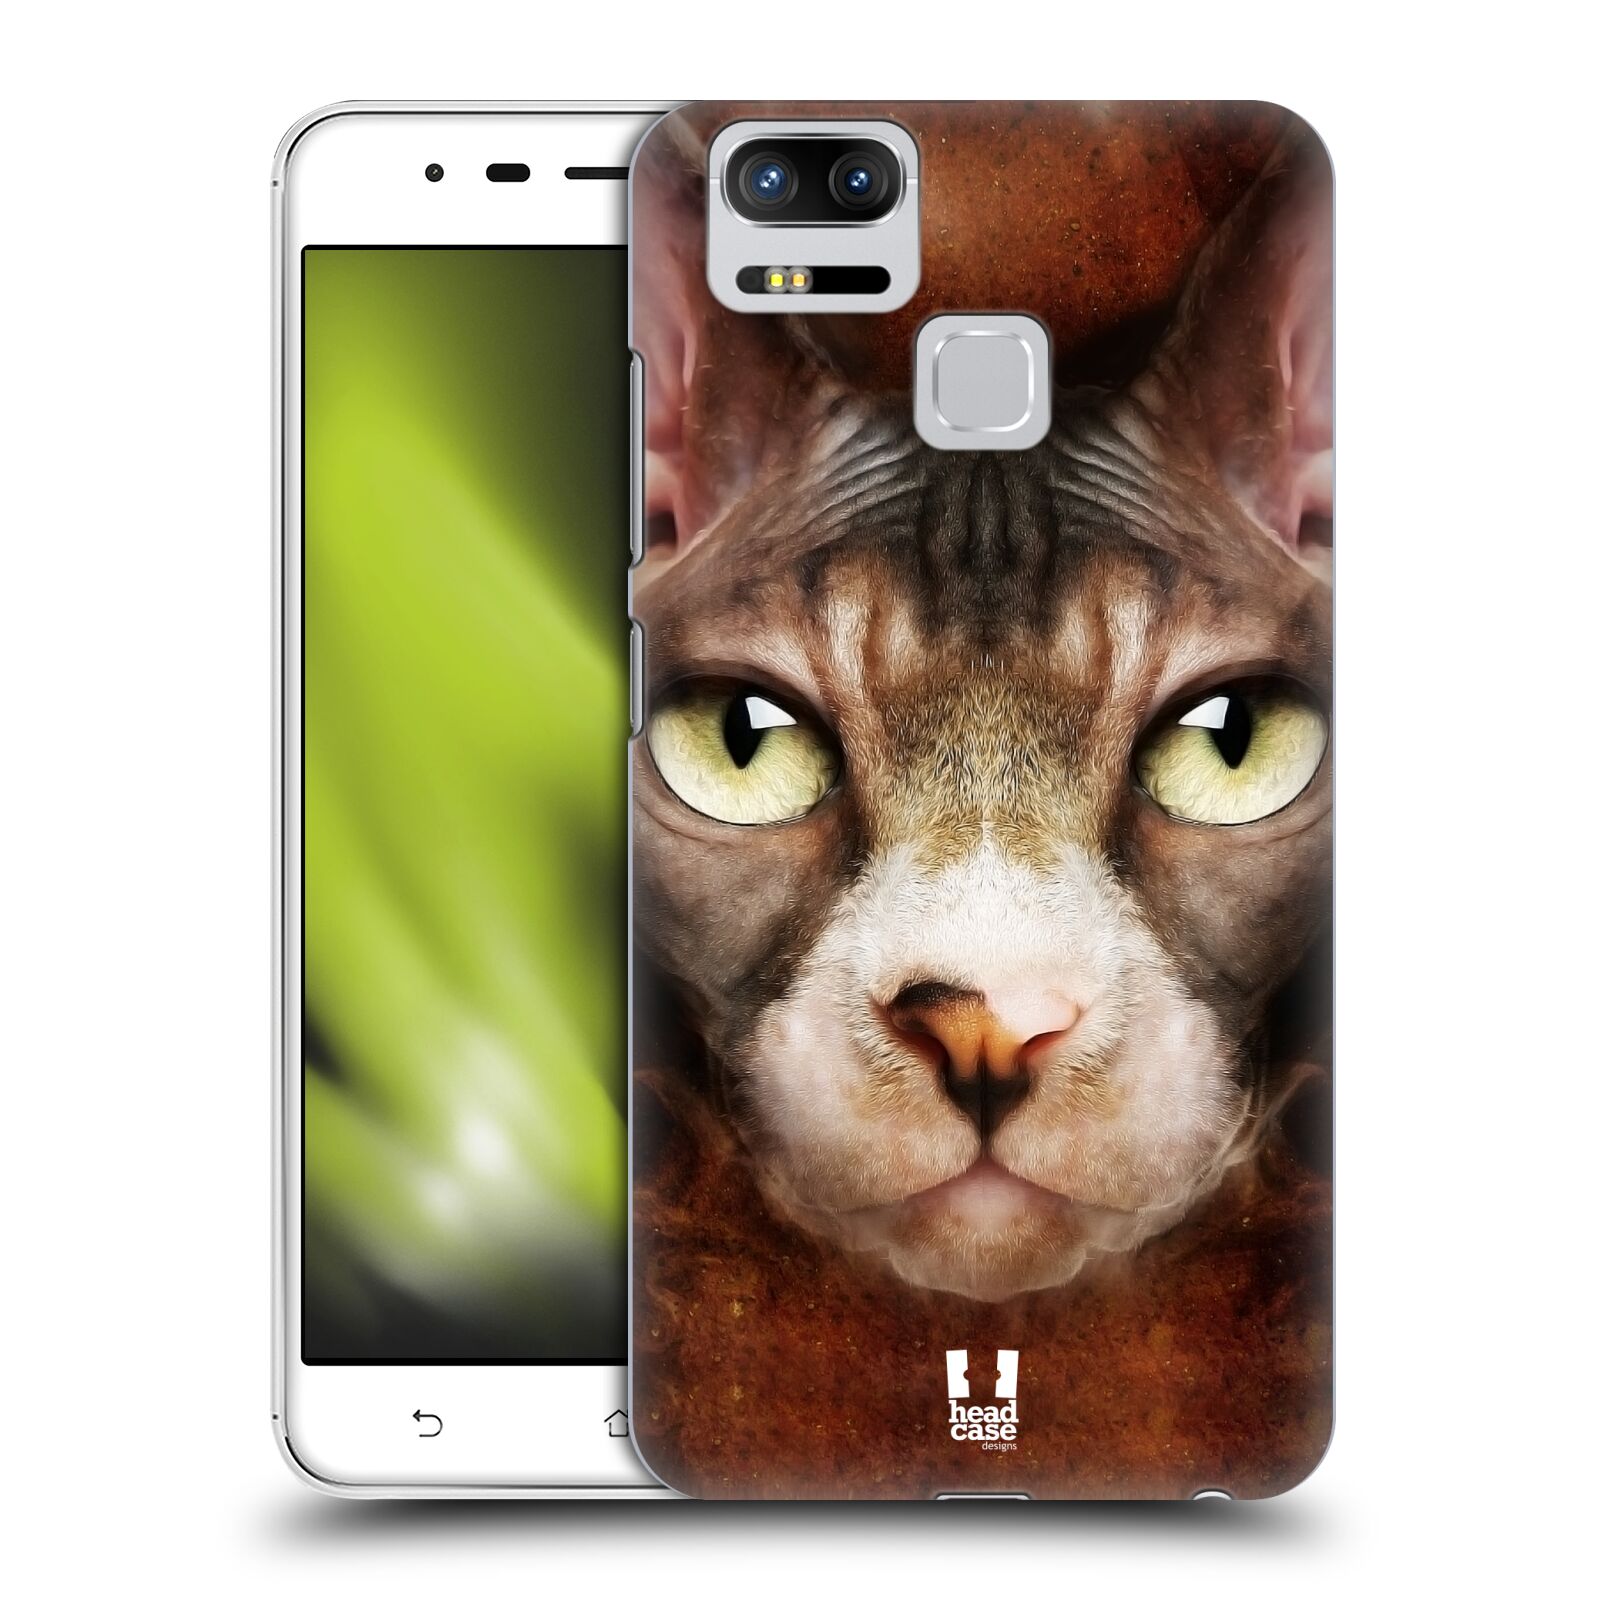 HEAD CASE plastový obal na mobil Asus Zenfone 3 Zoom ZE553KL vzor Zvířecí tváře kočka sphynx